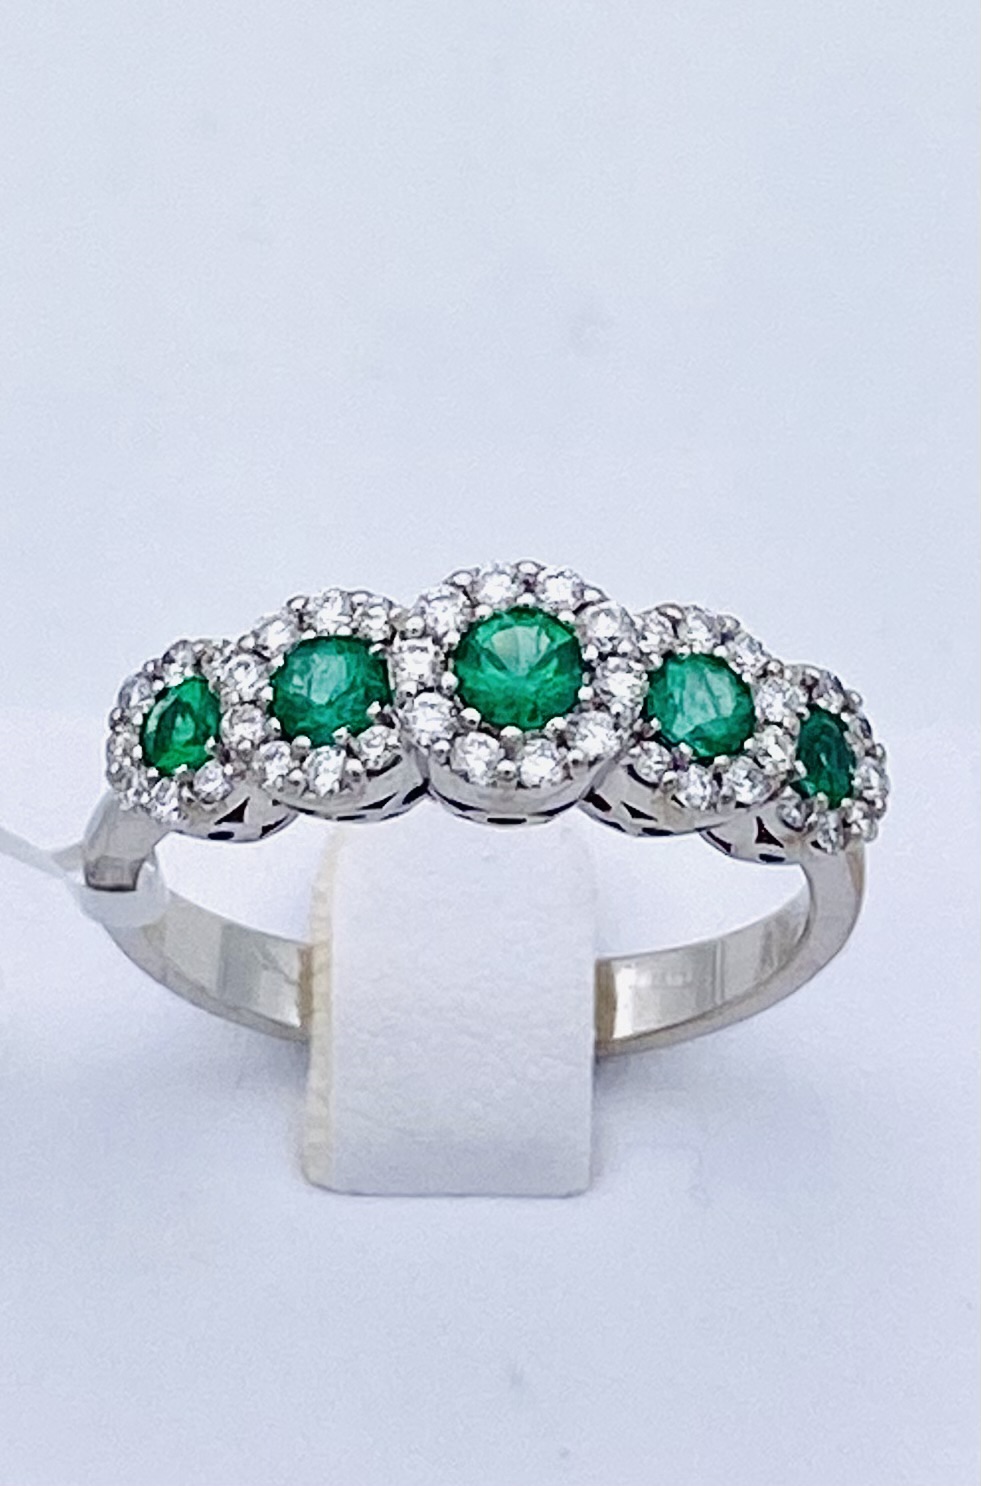 Emerald veretta ring 750% gold and BELLE EPOQUE diamonds Art. AN2094